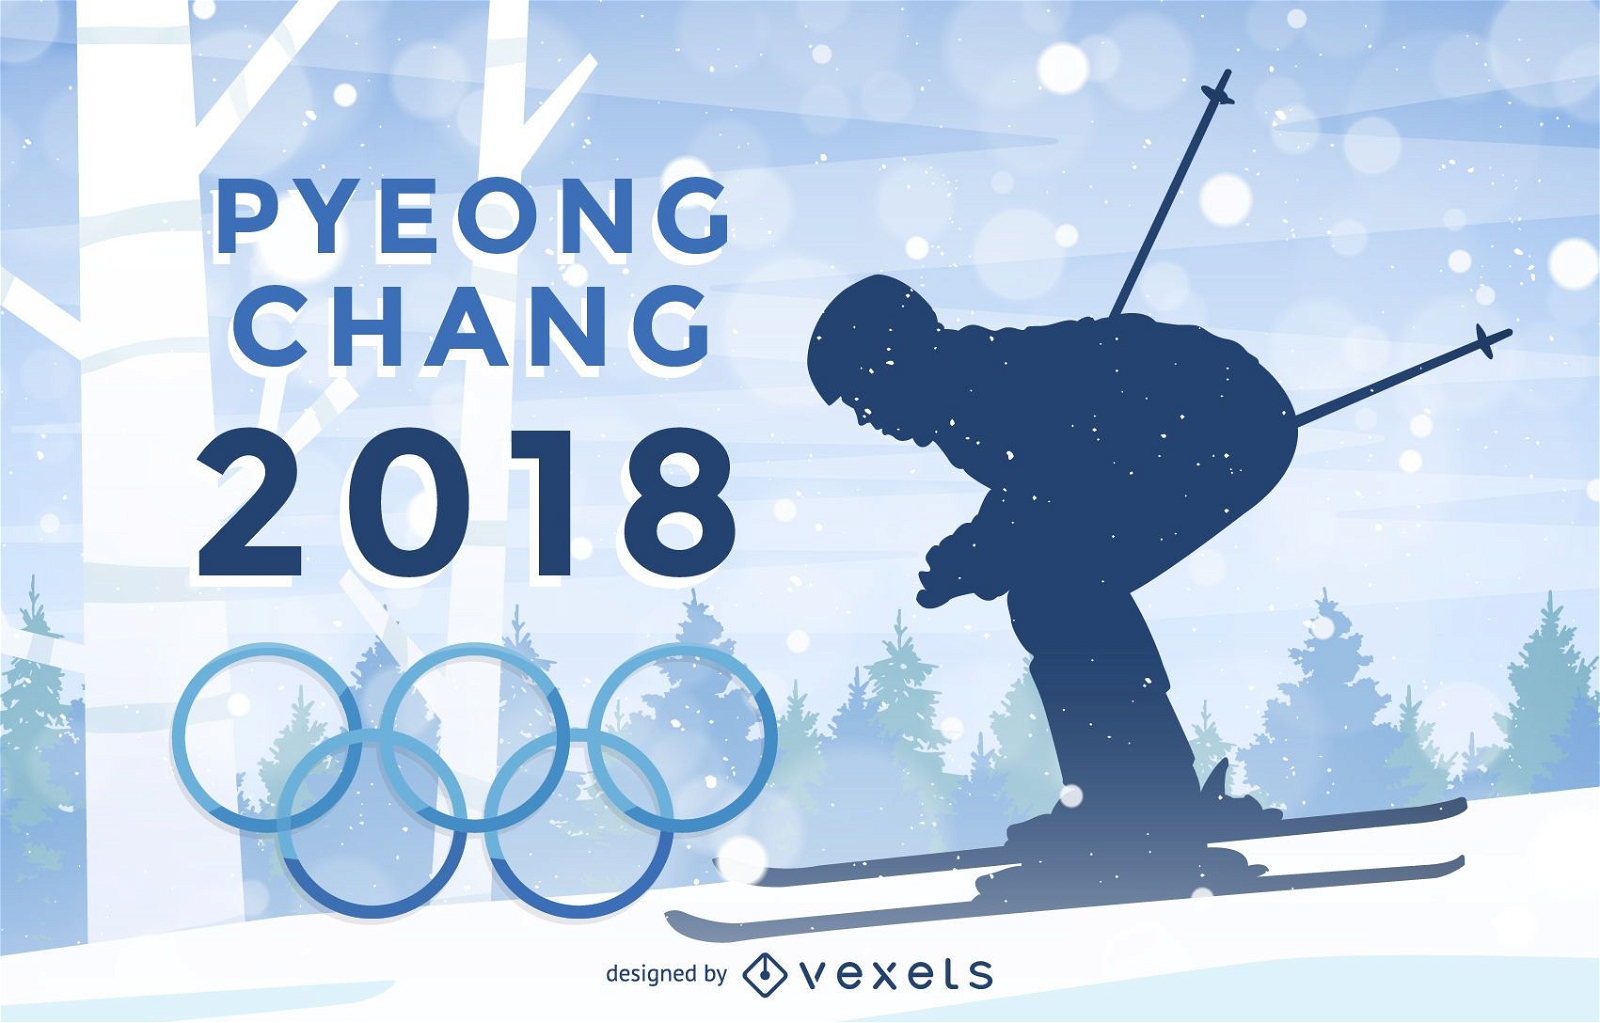 P?ster dos Jogos Ol?mpicos de Inverno de Pyeongchang 2018